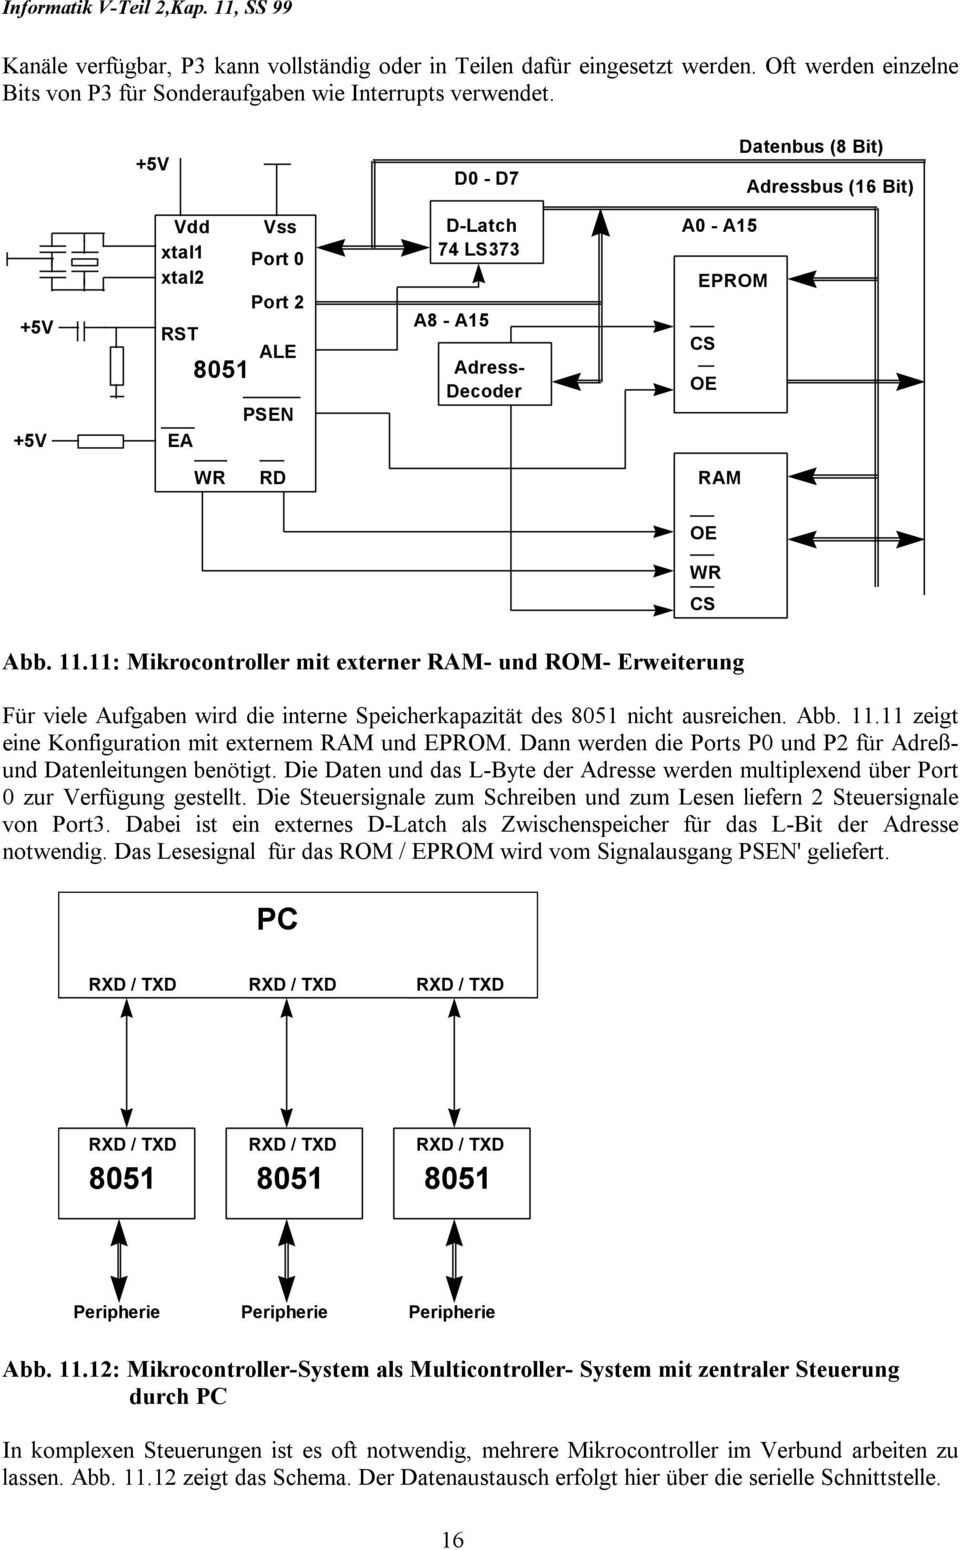 11.11: Mikrocontroller mit externer RAM- und ROM- Erweiterung Für viele Aufgaben wird die interne Speicherkapazität des 8051 nicht ausreichen. Abb. 11.